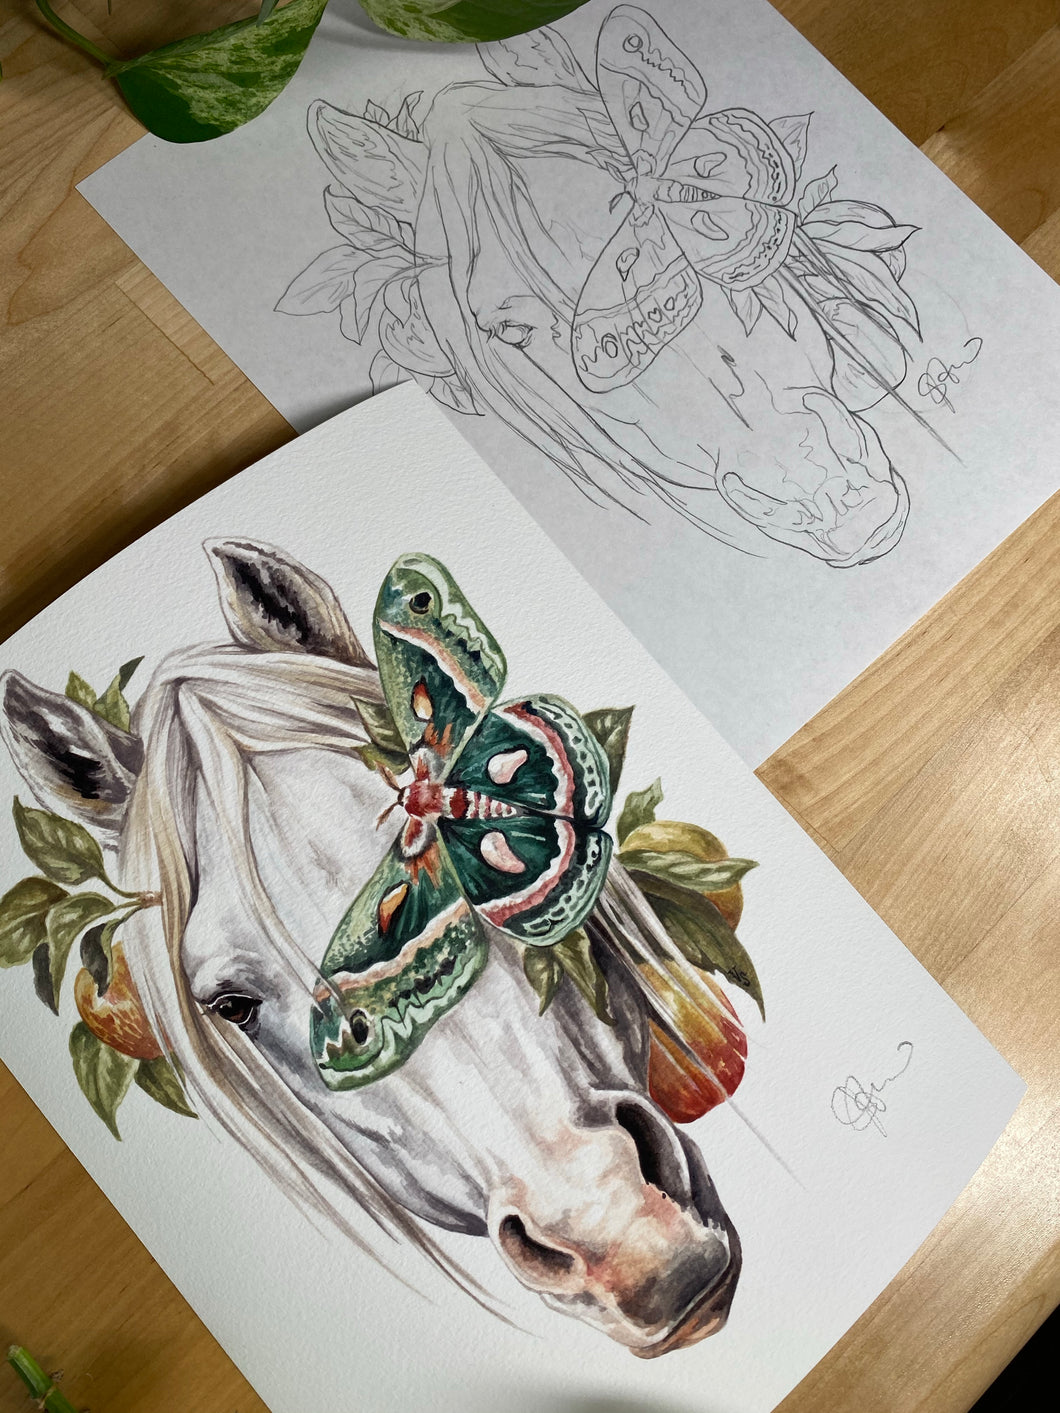 Horse original sketch and print